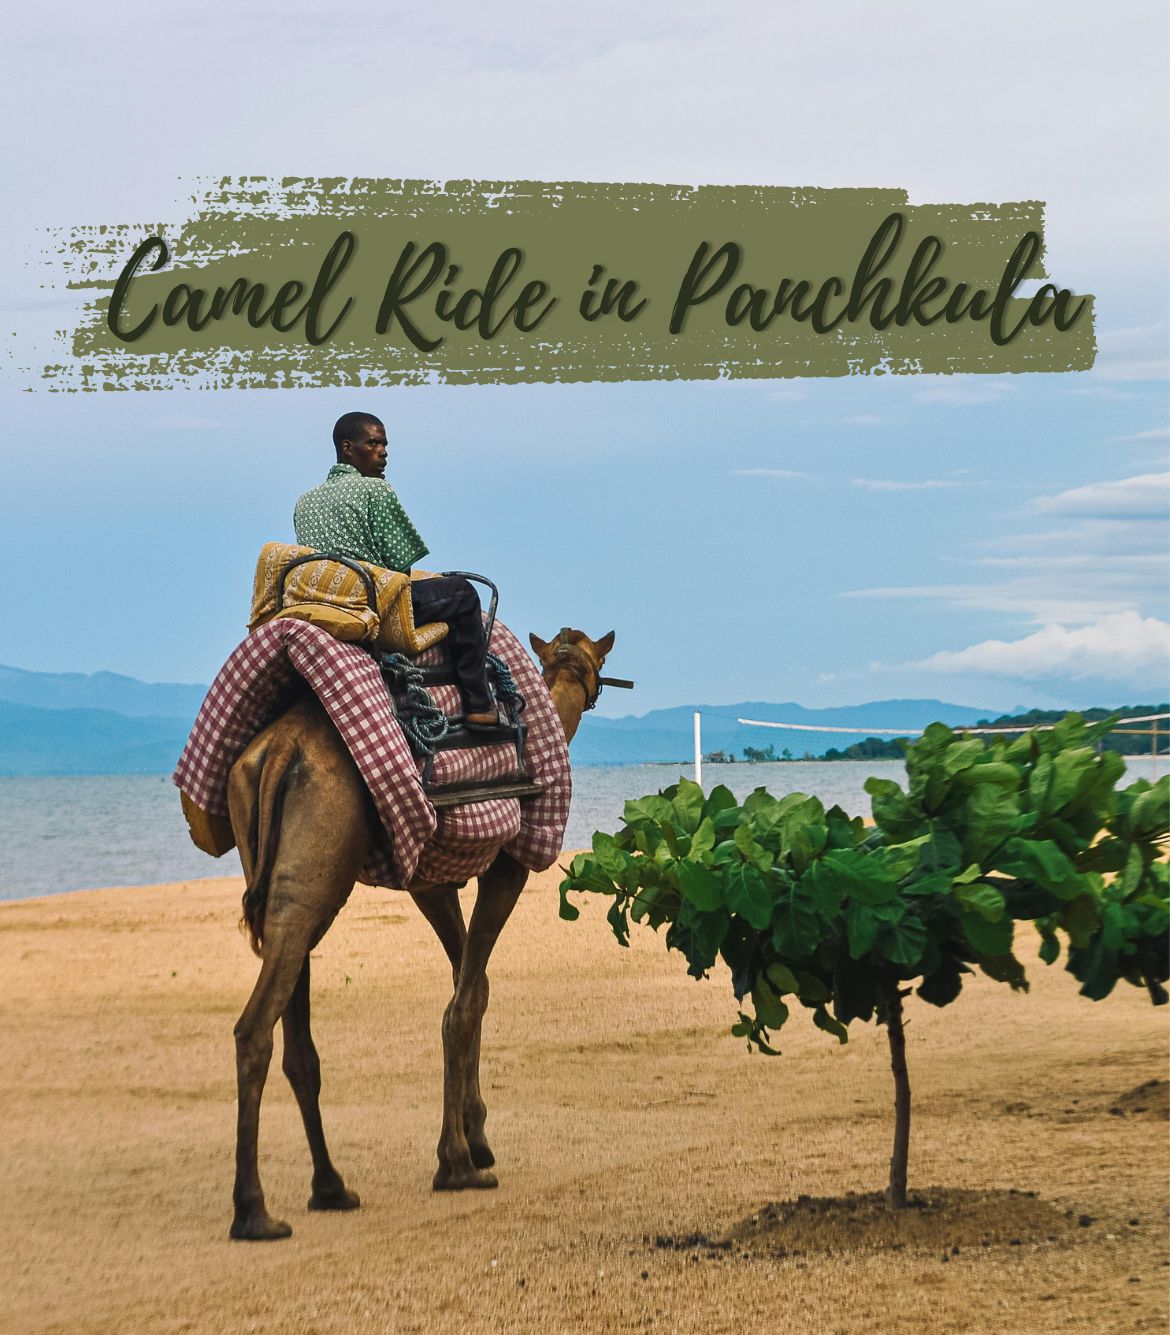 Camel Ride in Panchkula